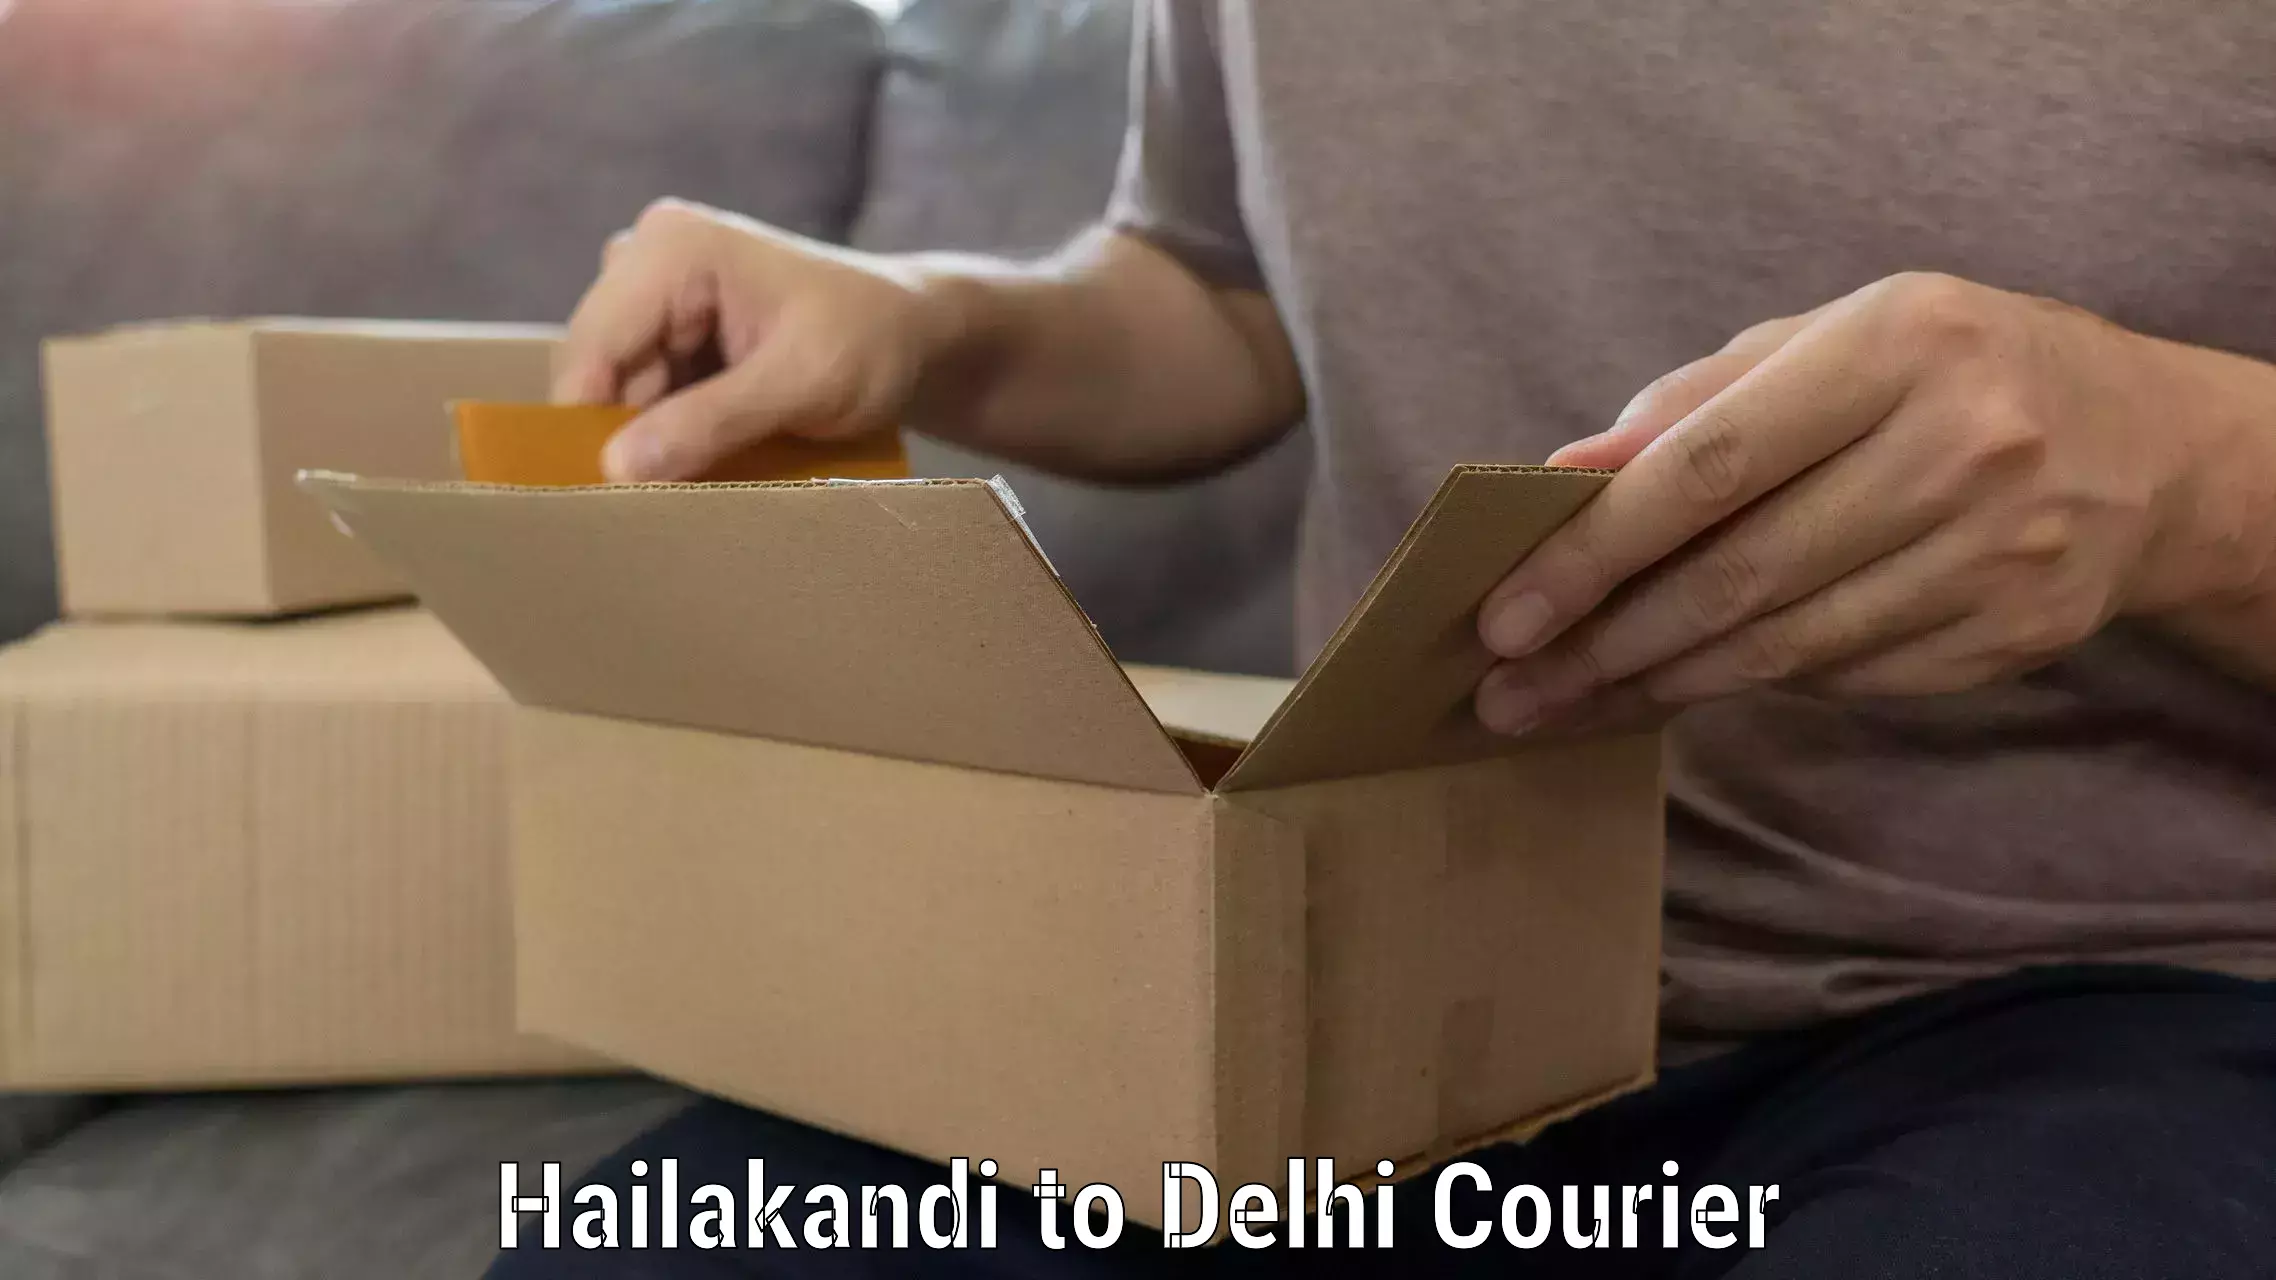 Furniture transport solutions Hailakandi to Delhi